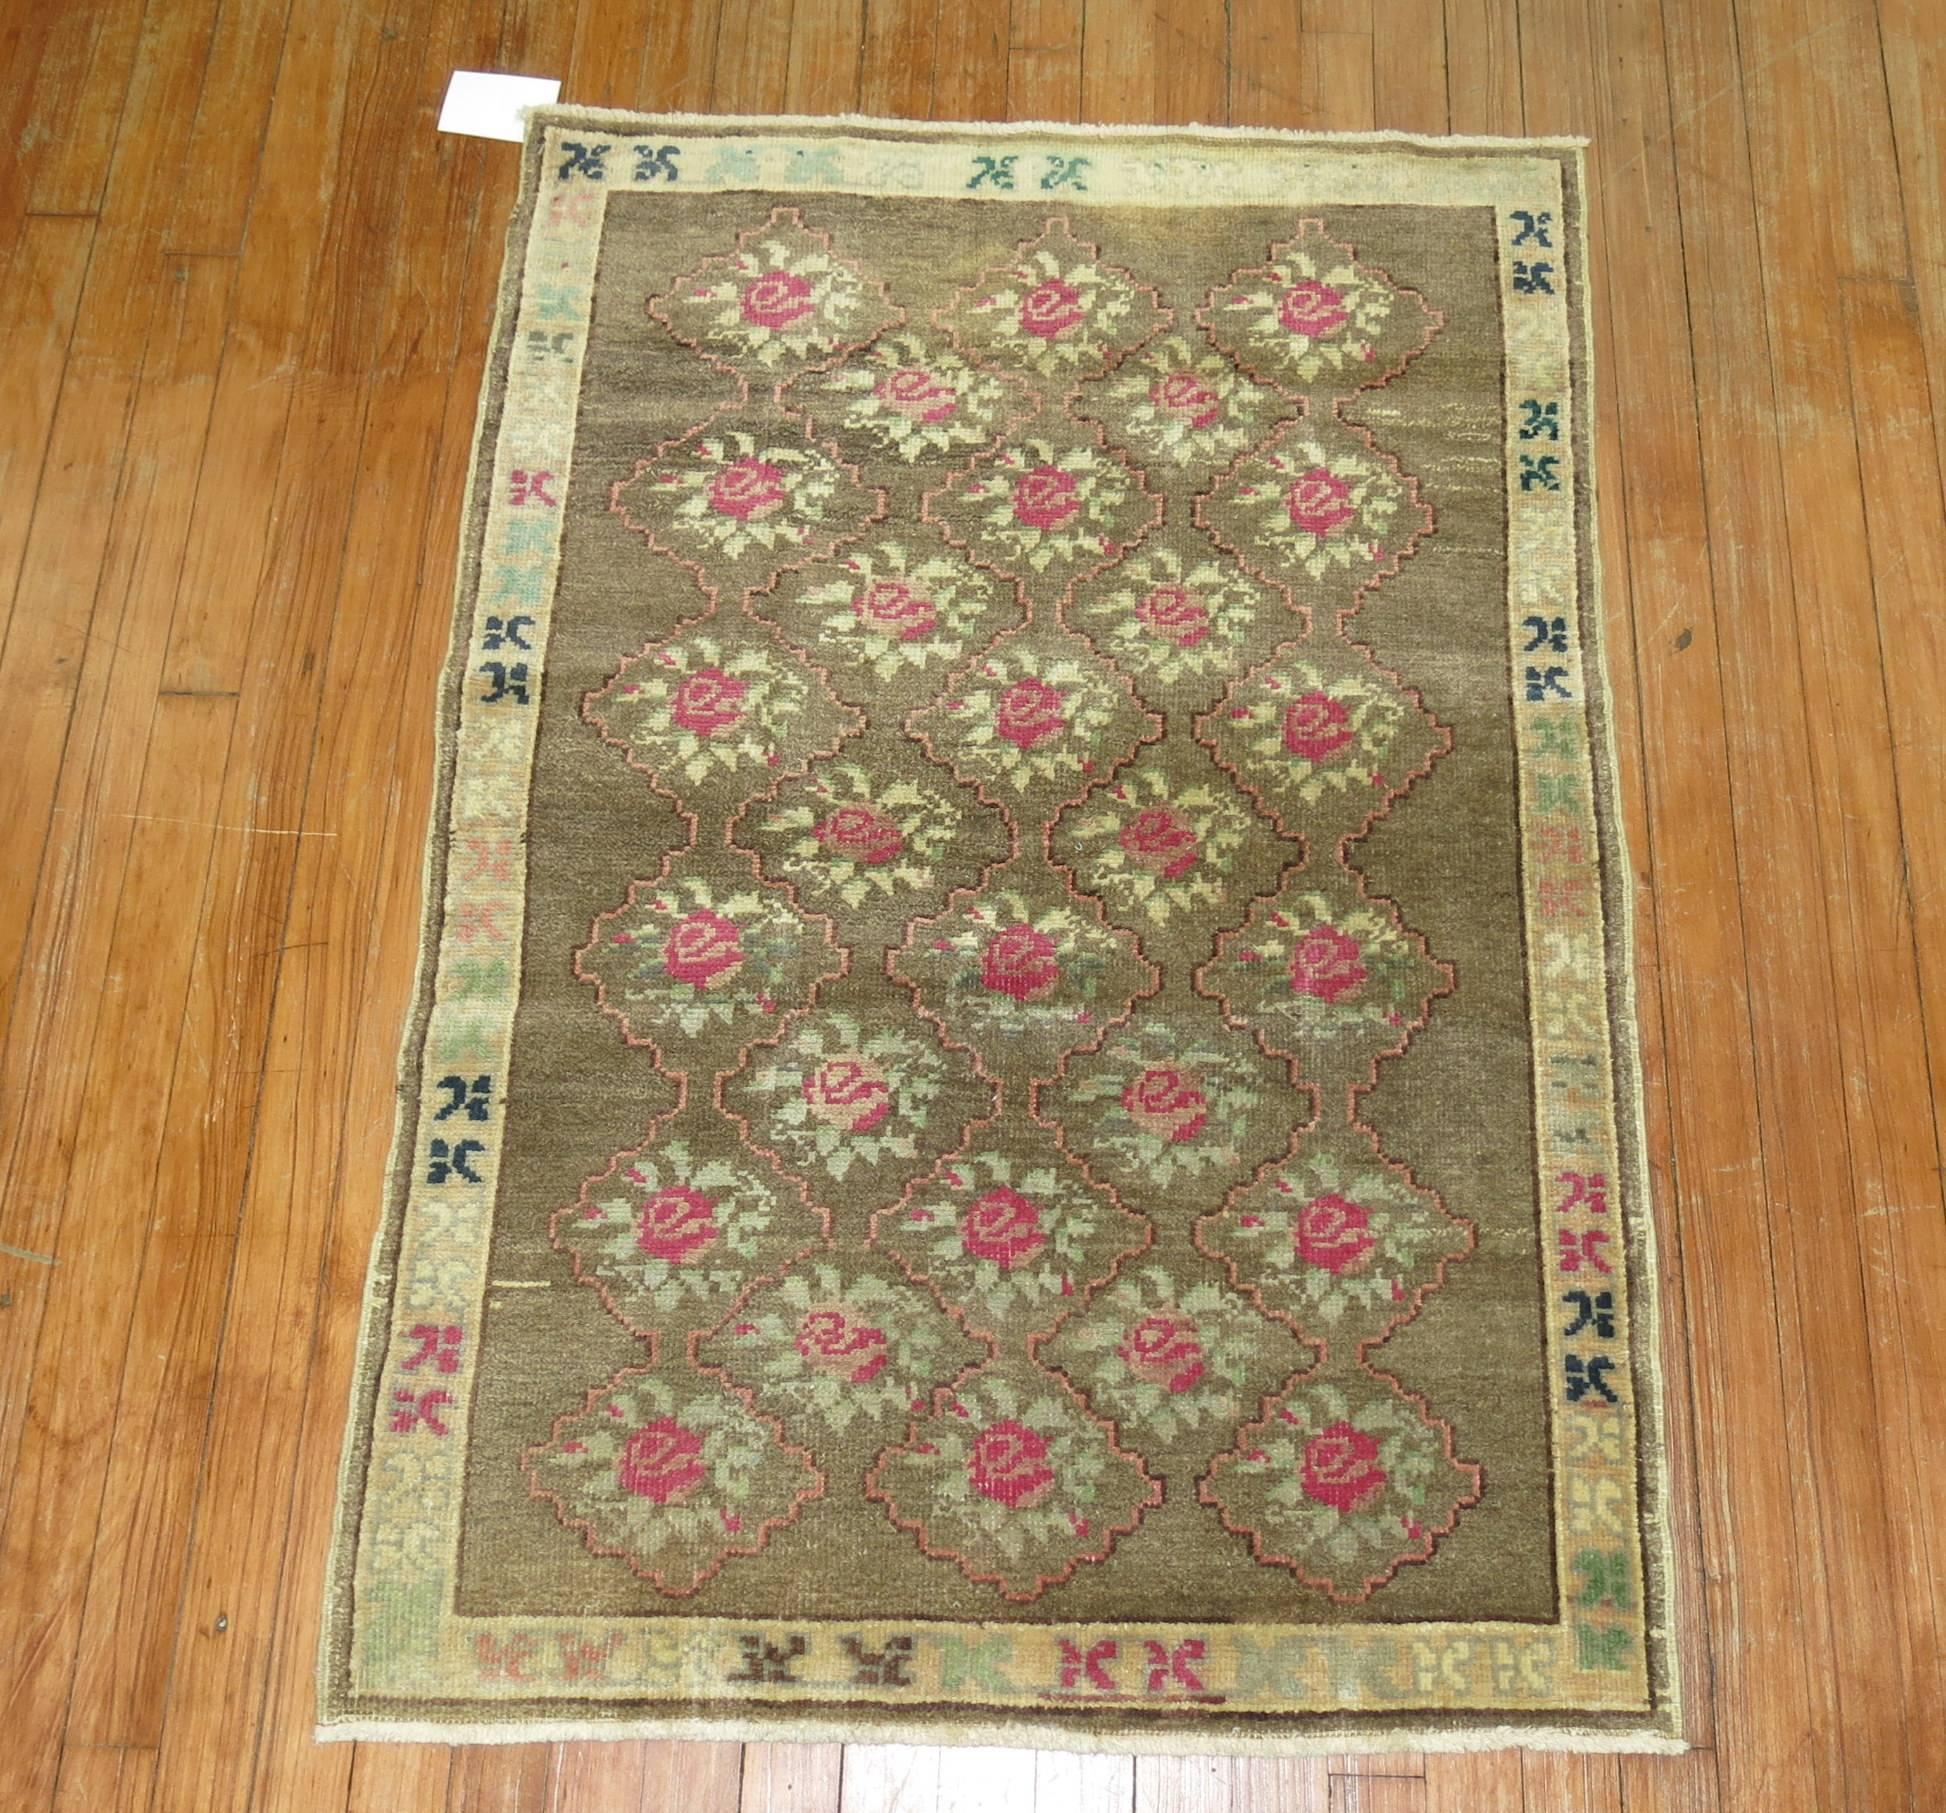 Feminine style mid-20th century Turkish Konya village rug.